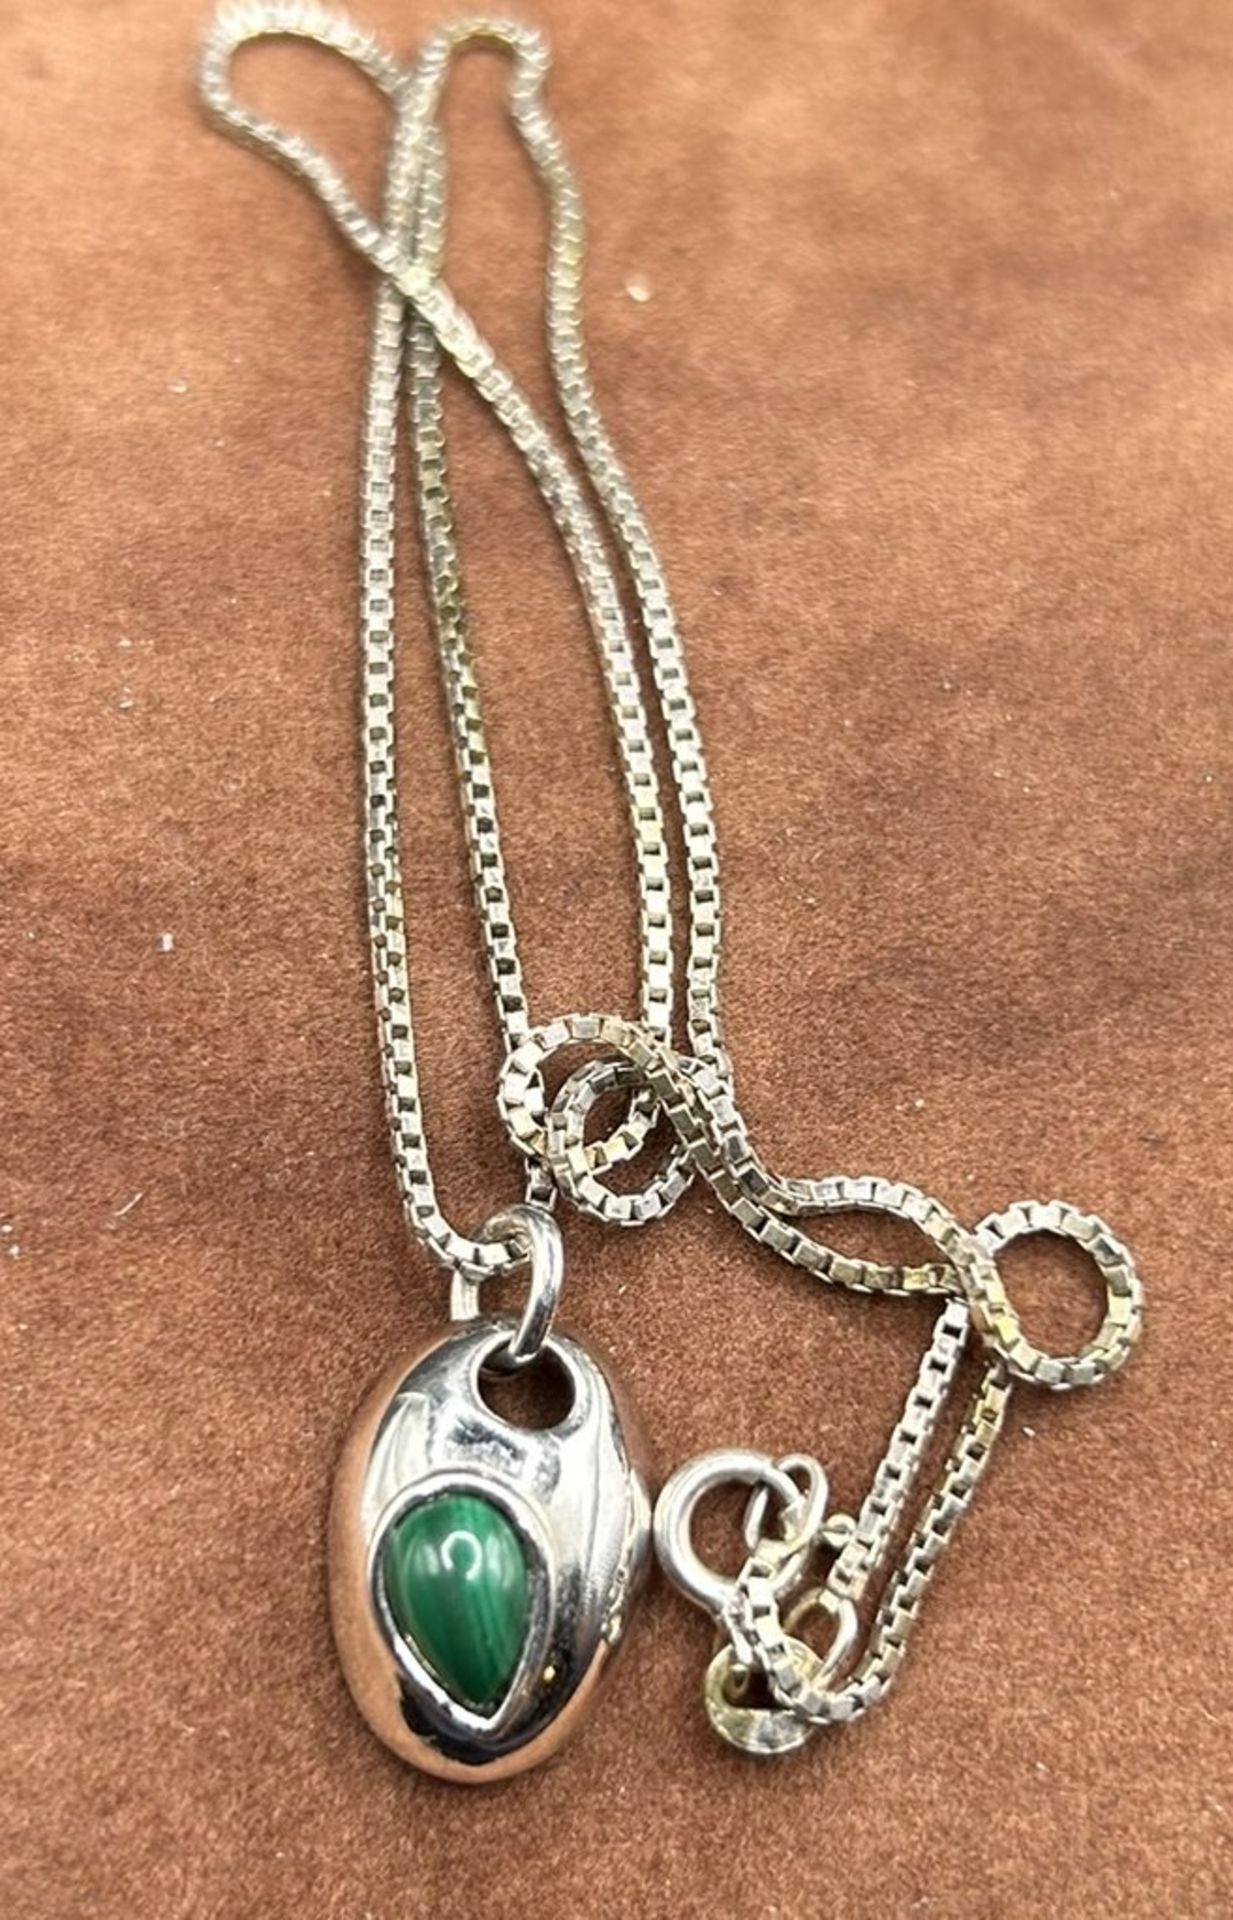 Silber-Halskette mit kl. Silber-Anhänger, grüner Stein, L-42 cm, Anhänger 2cm, 4,8 gr.